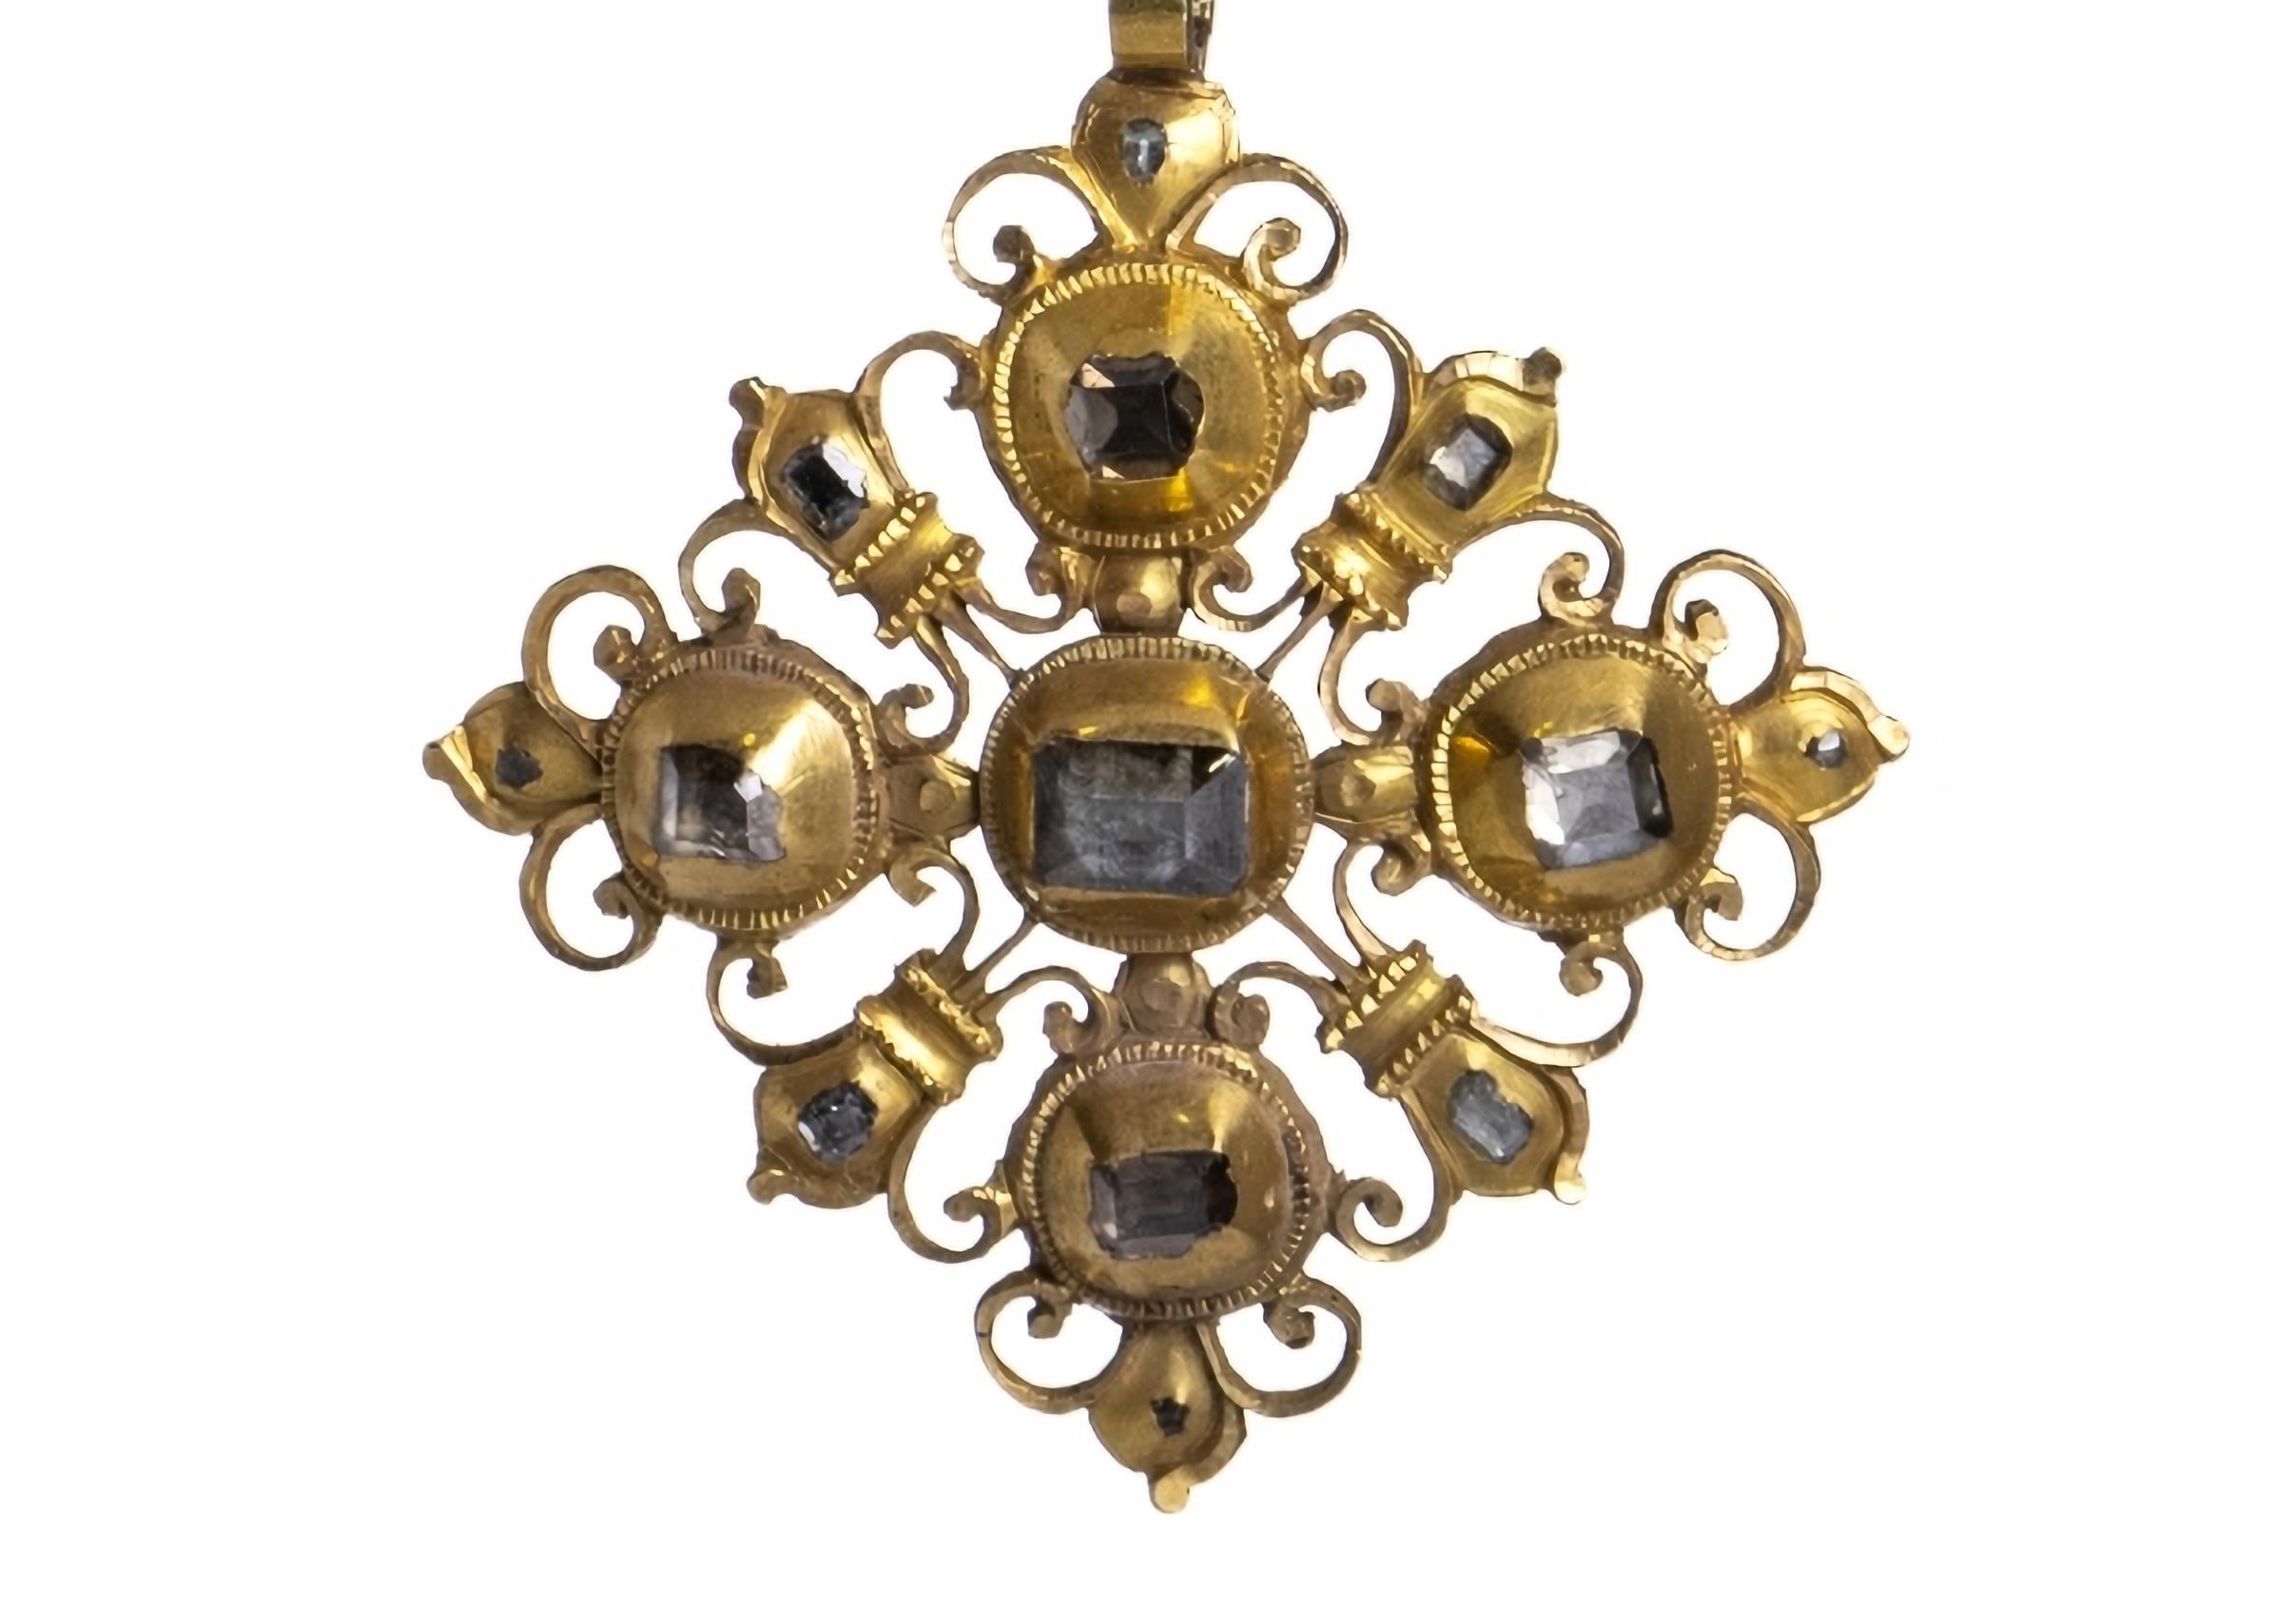 KAROSSERIEVERKLEIDUNG IN GOLD MIT DIAMANTEN
18. Jahrhundert
aus 19,2 kt Gold, gefenstert und ziseliert, mit drei gelenkigen Körpern, besetzt mit Diamanten im Antikschliff, in Alveolen gefasst. Mit Goldschmiedekontrast 'GS'. Gebrauchsspuren an den